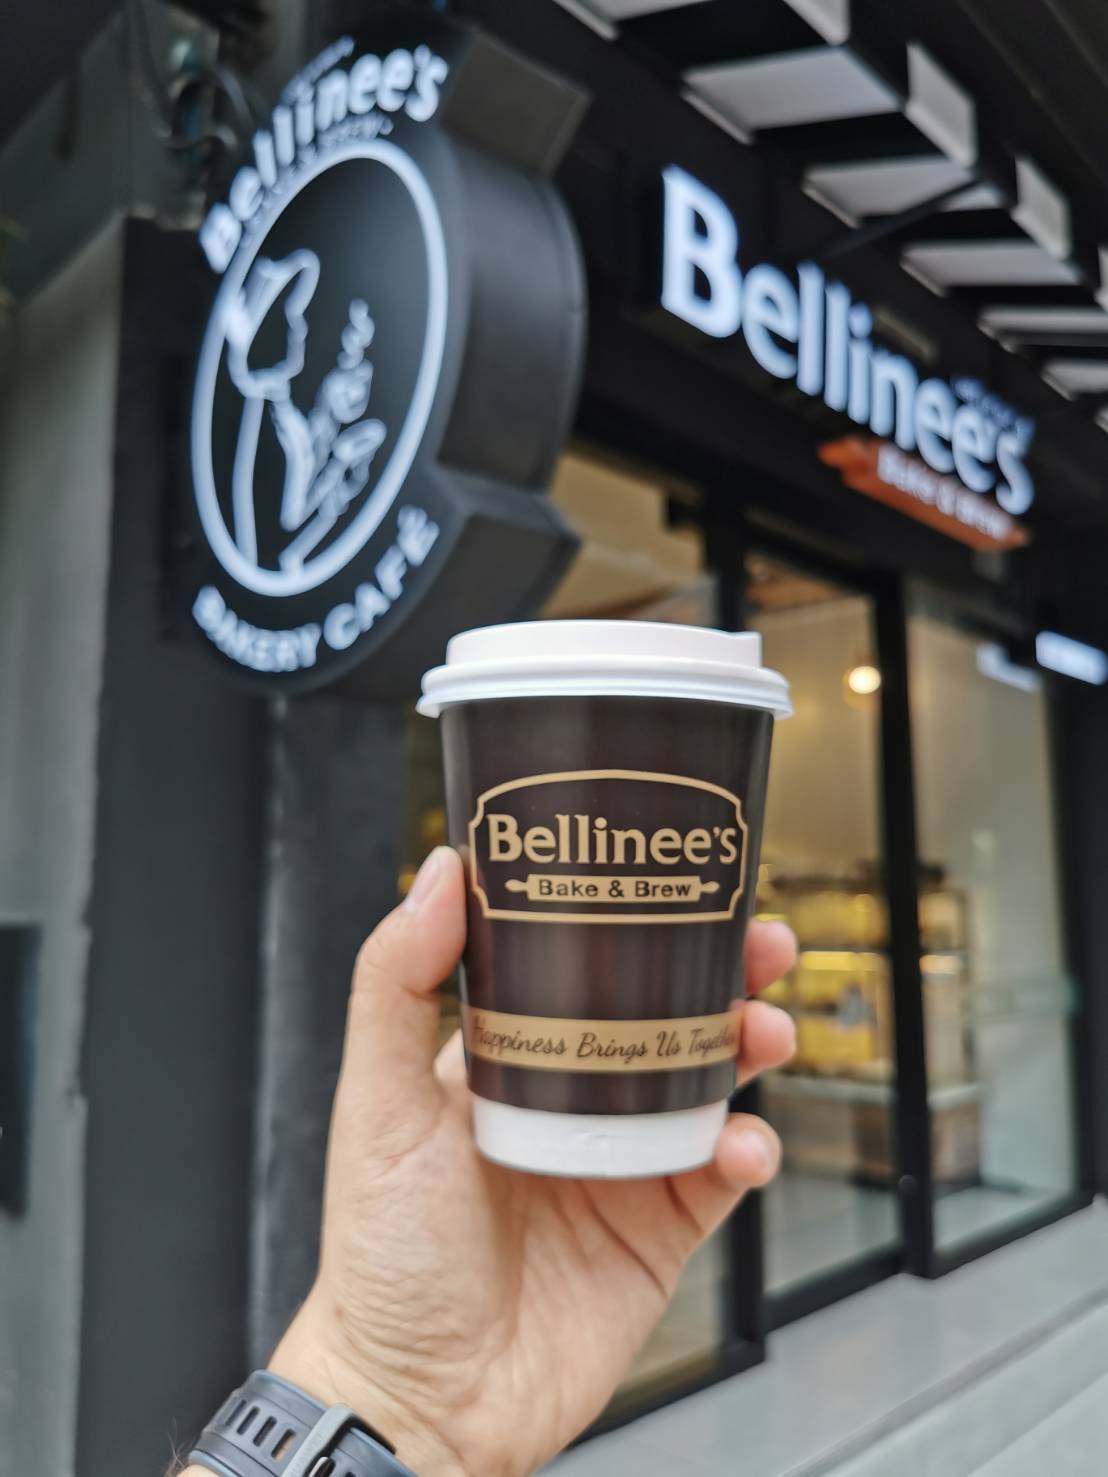 Bellinee's